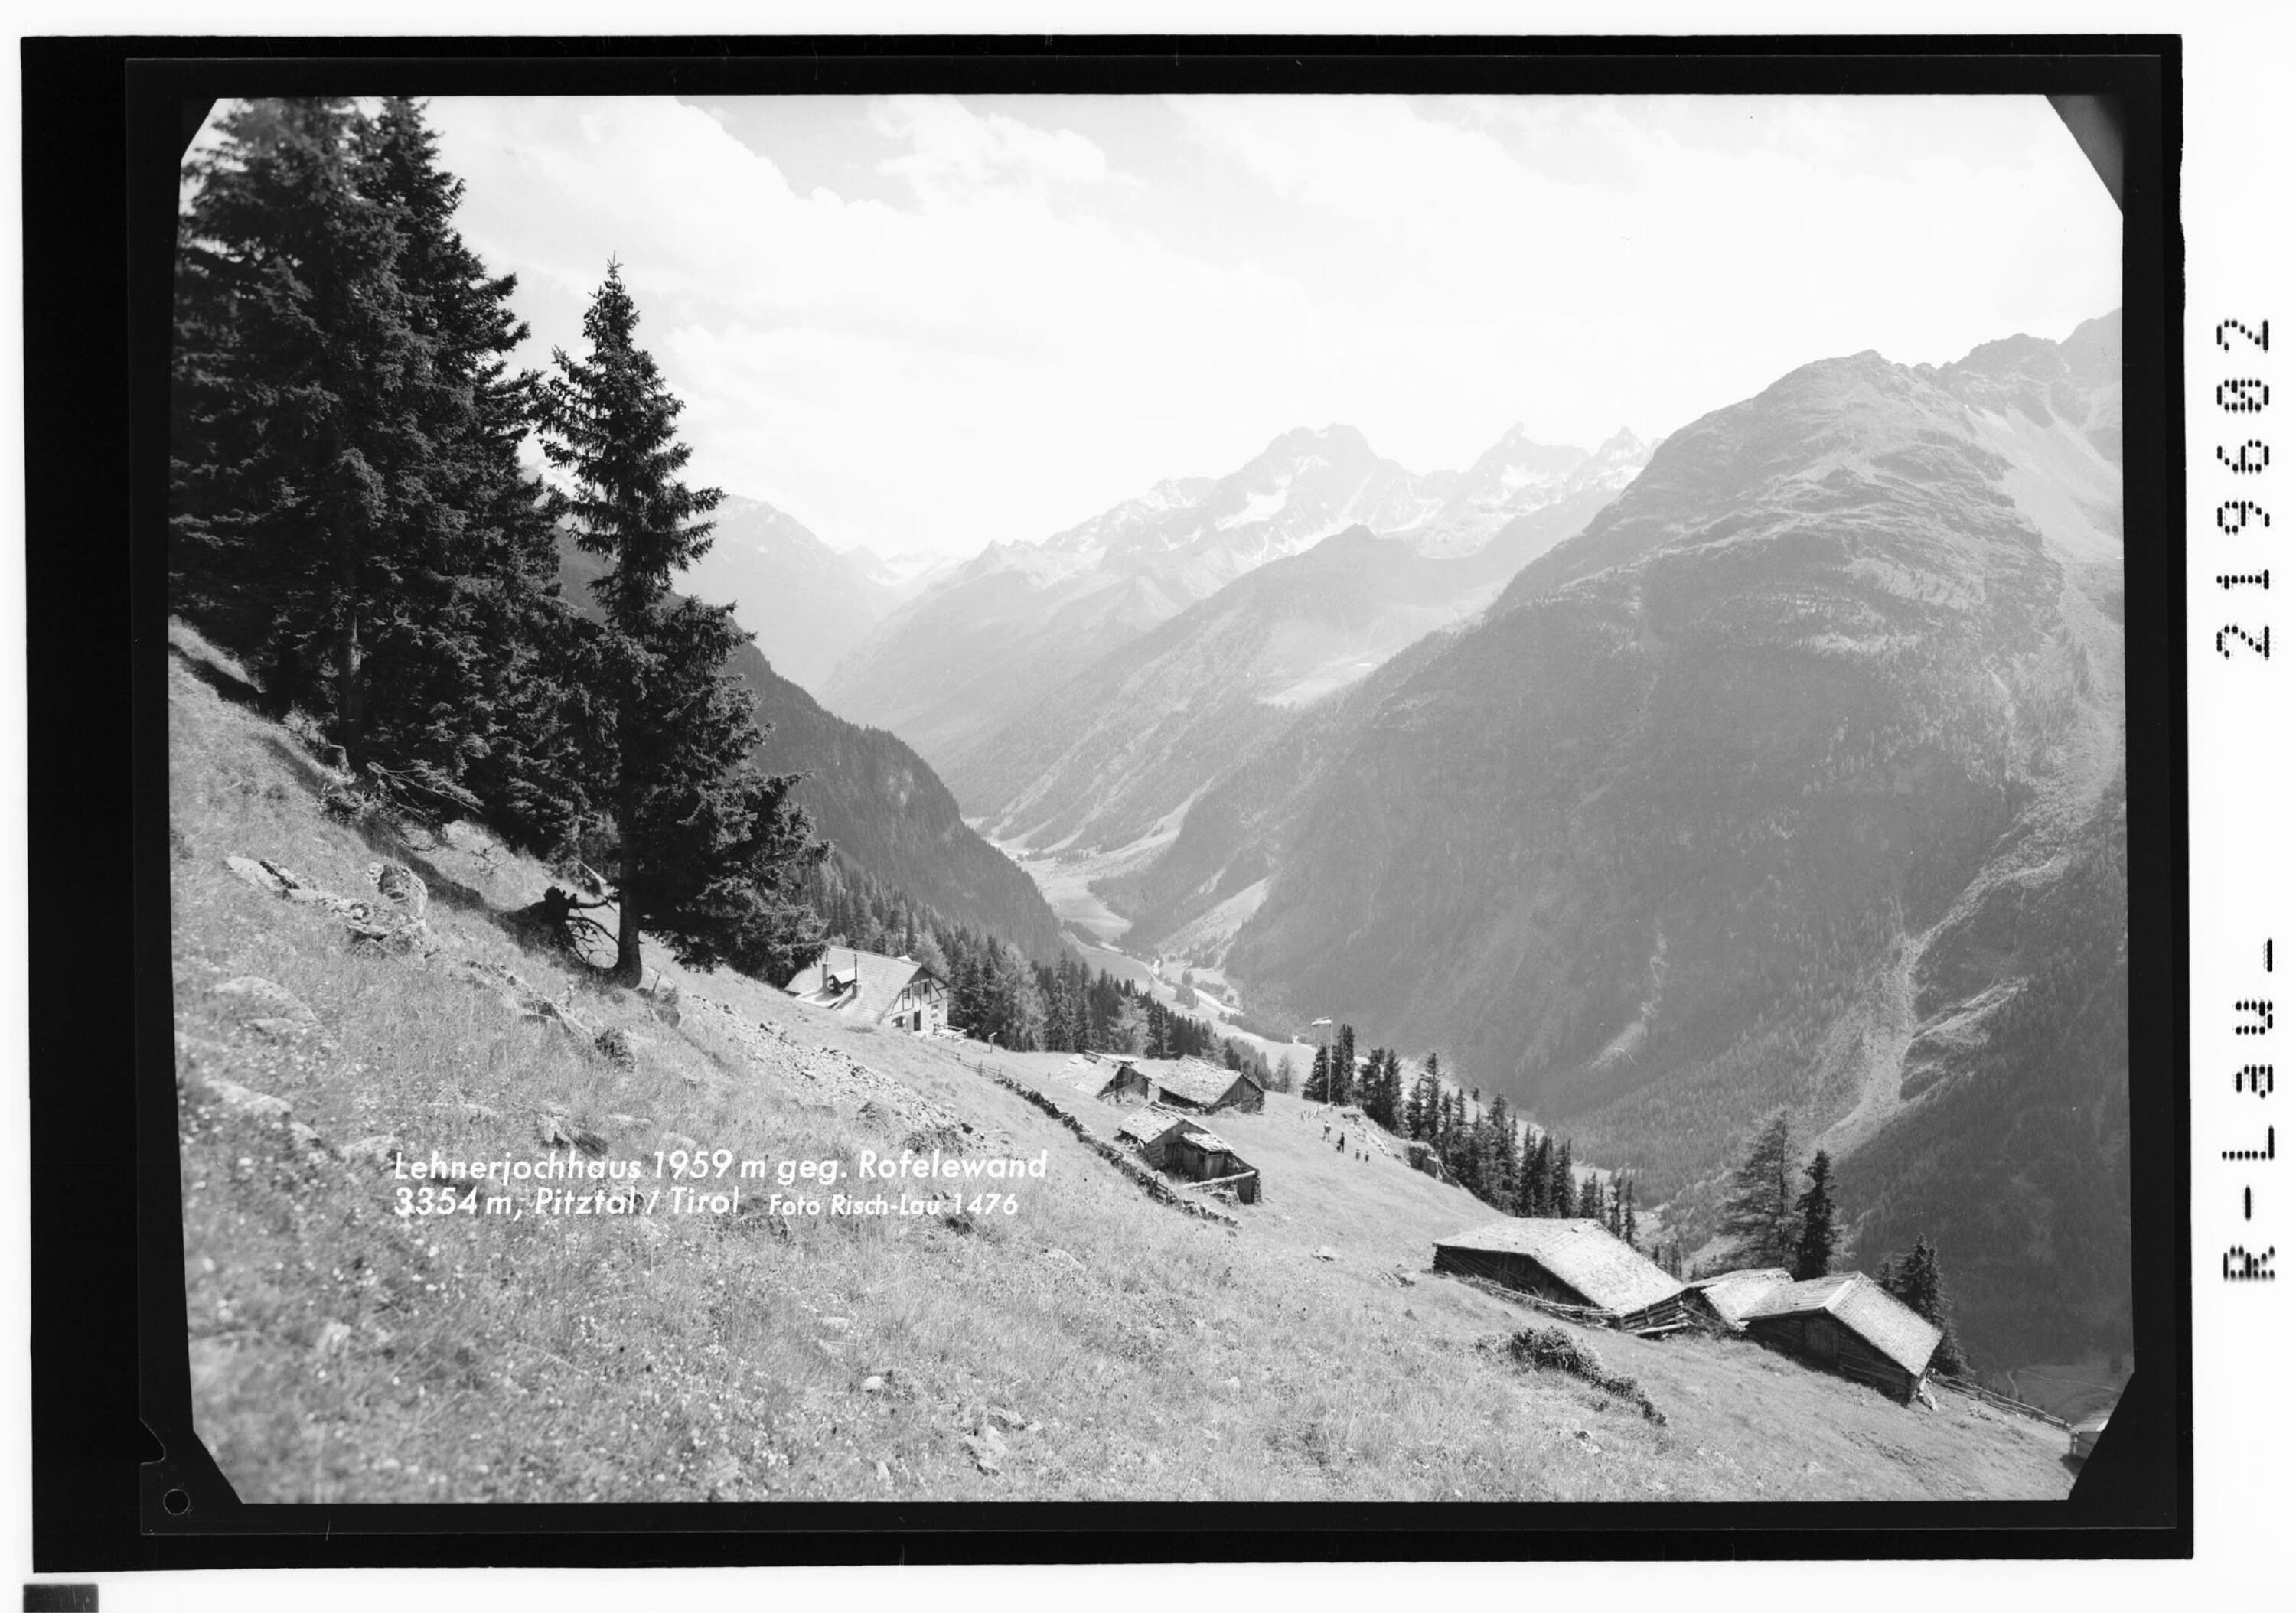 Lehnerjochhaus 1959 m gegen Rofelewand 3354 m, Pitztal / Tirol></div>


    <hr>
    <div class=